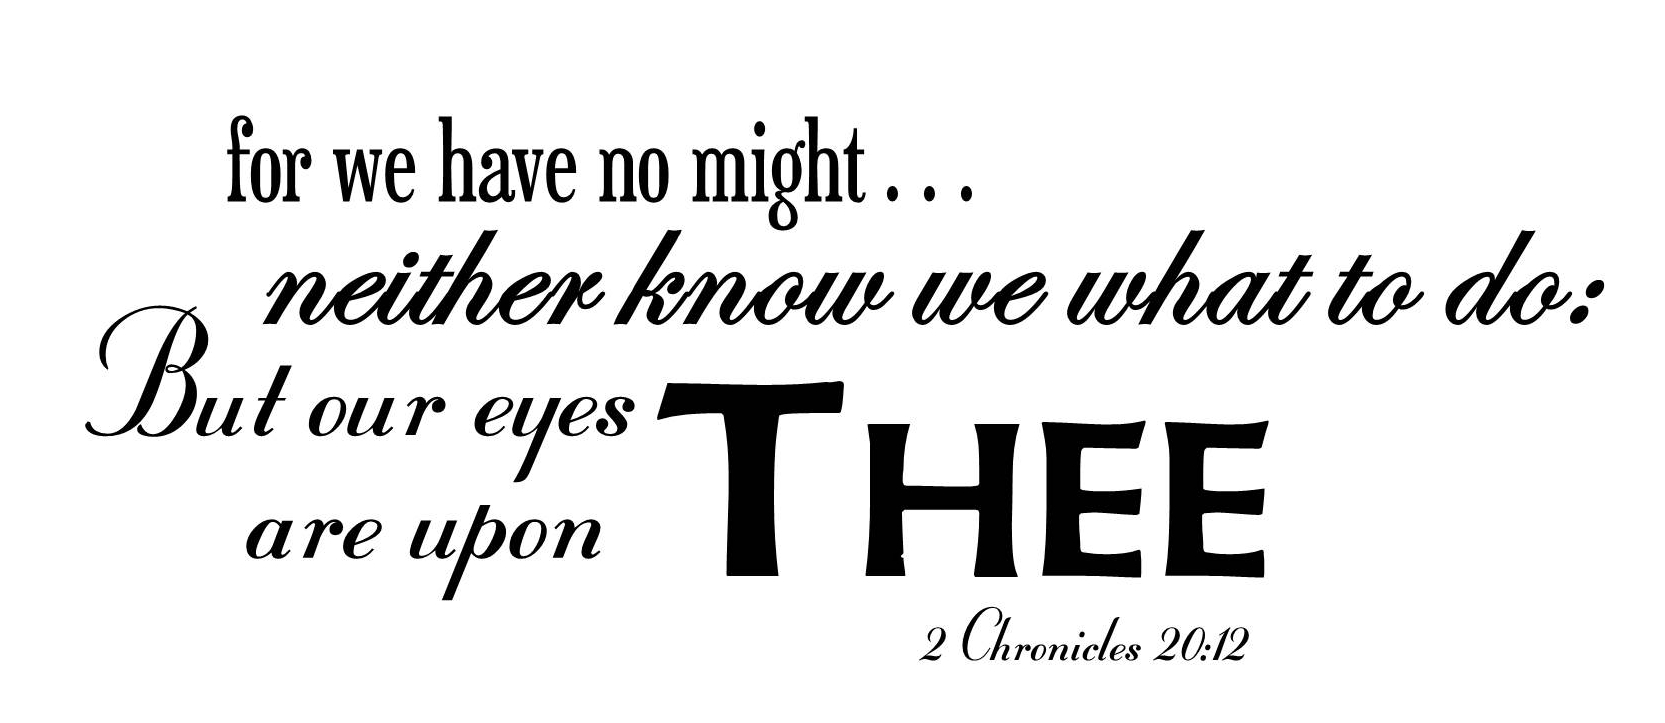 2 Chronicles 20:12b